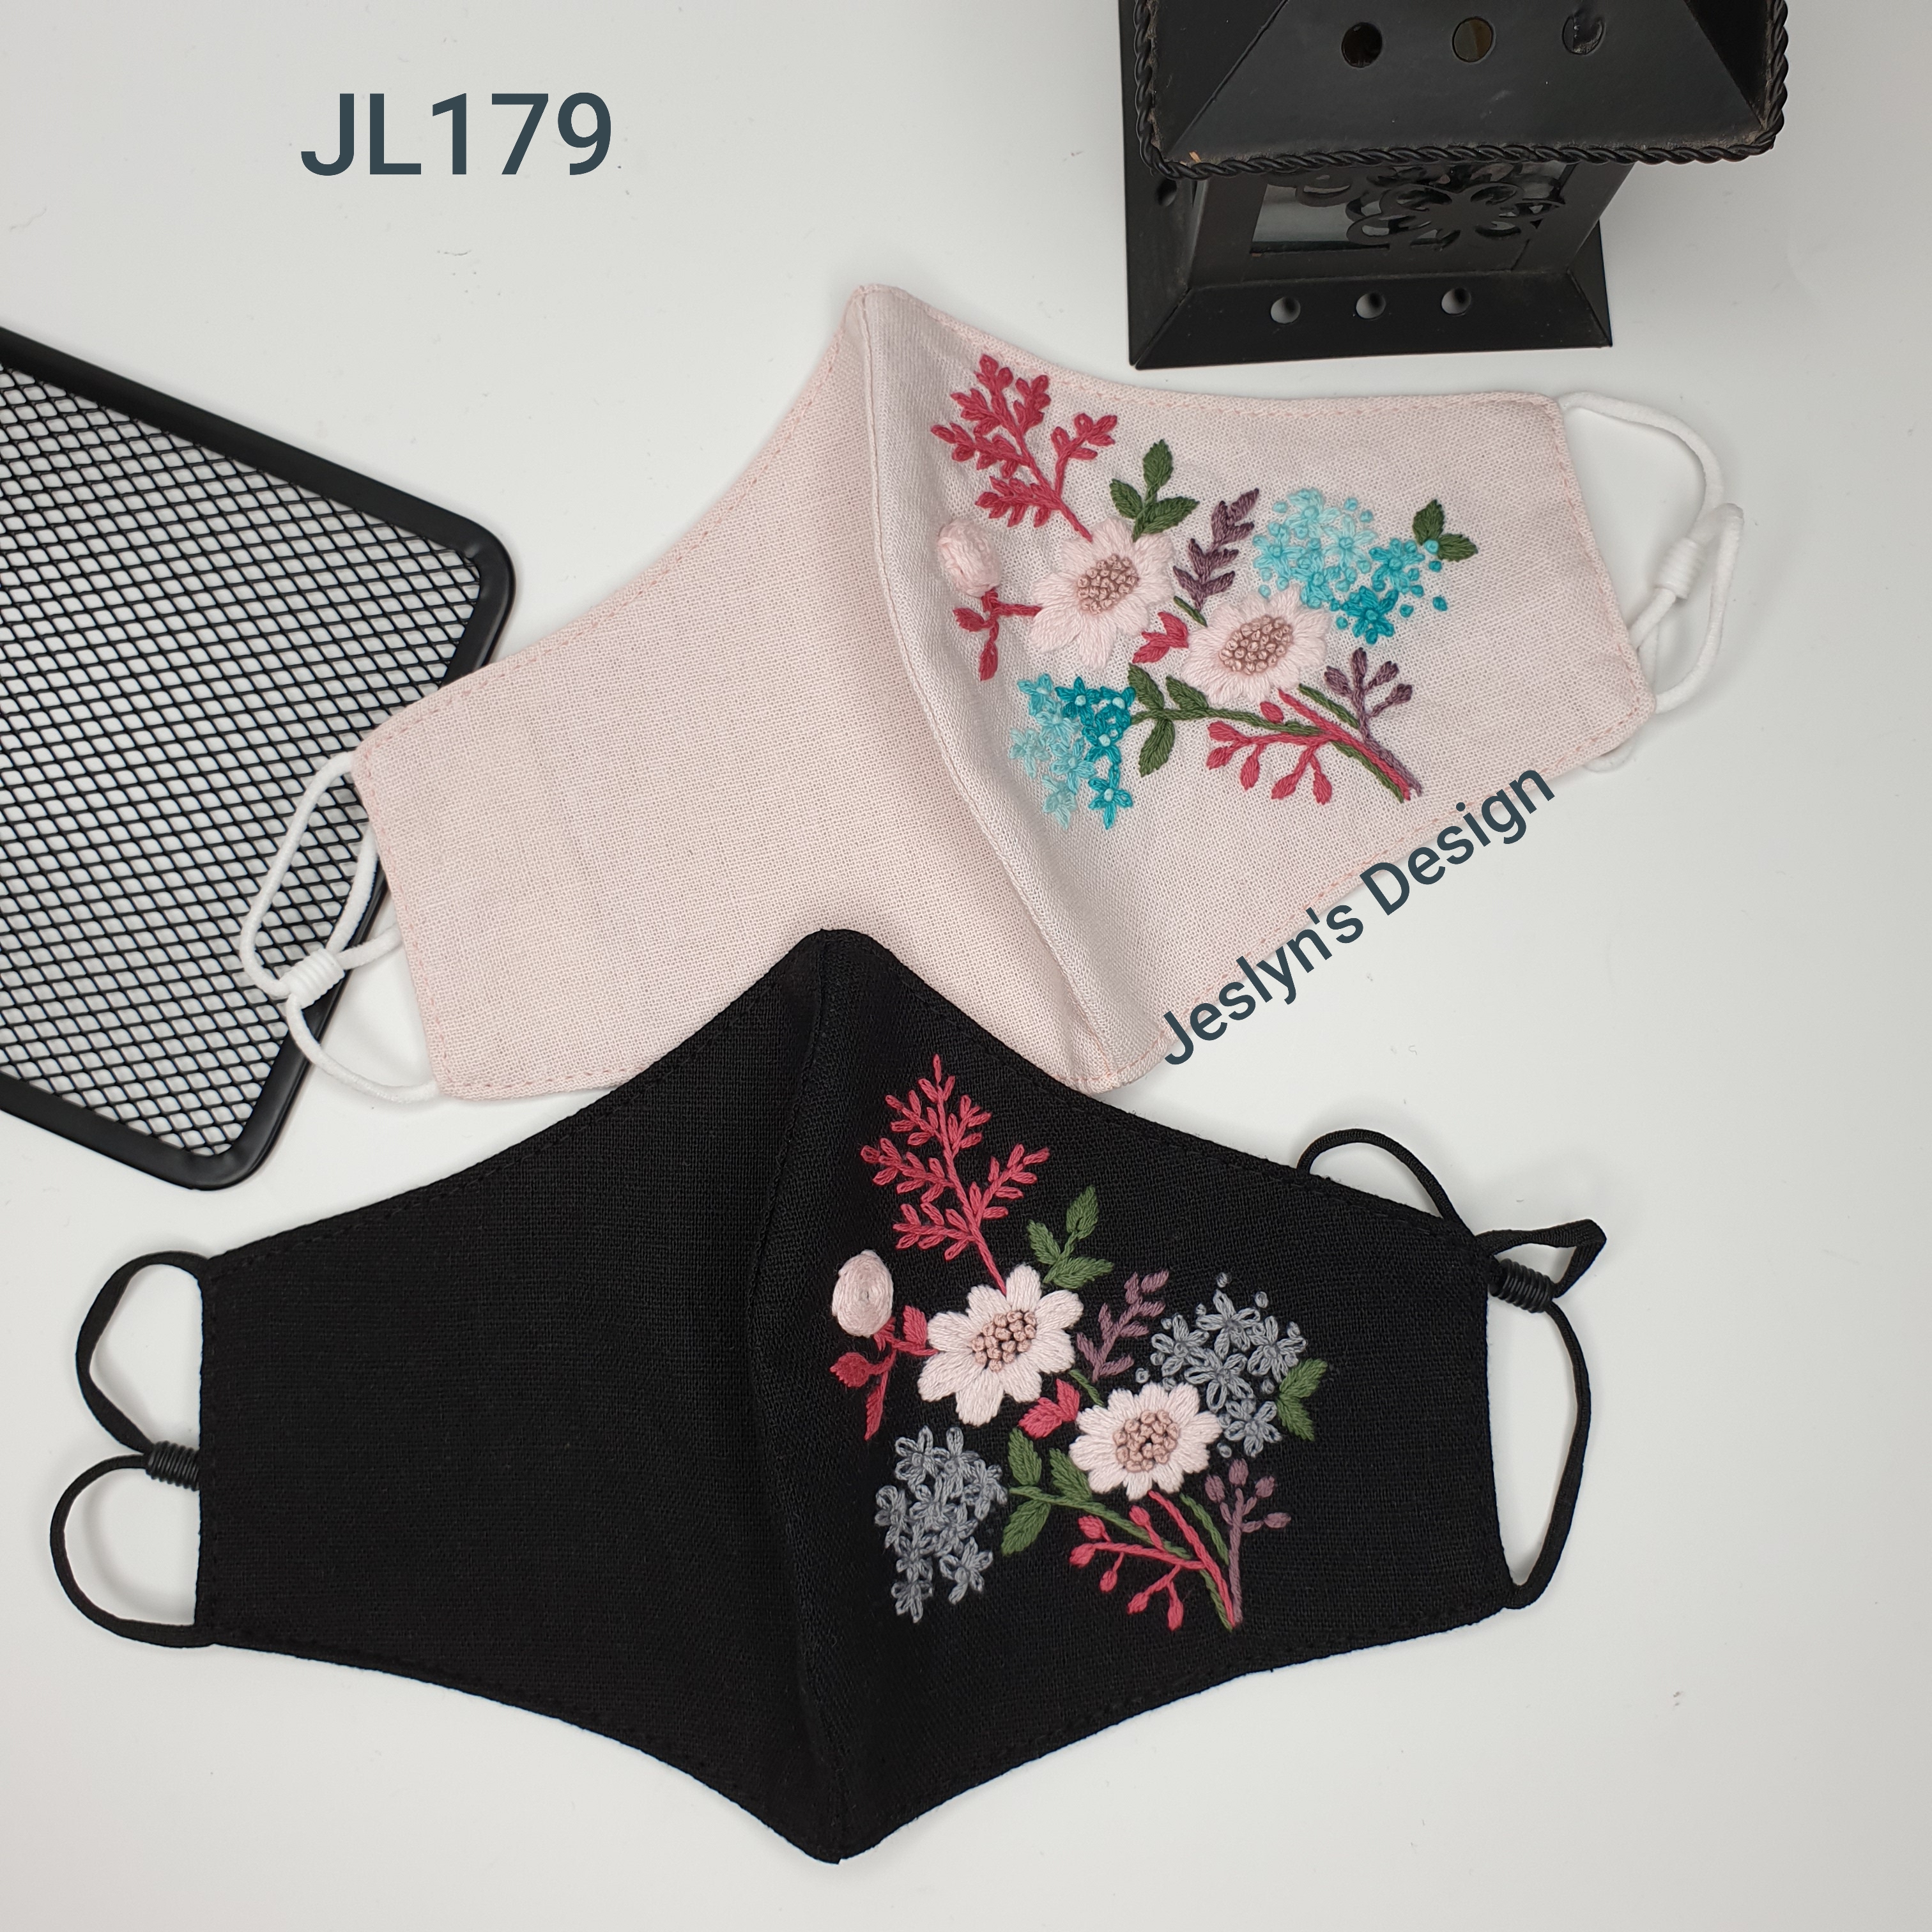 Khẩu trang thêu tay vải linen hình hoa JL179